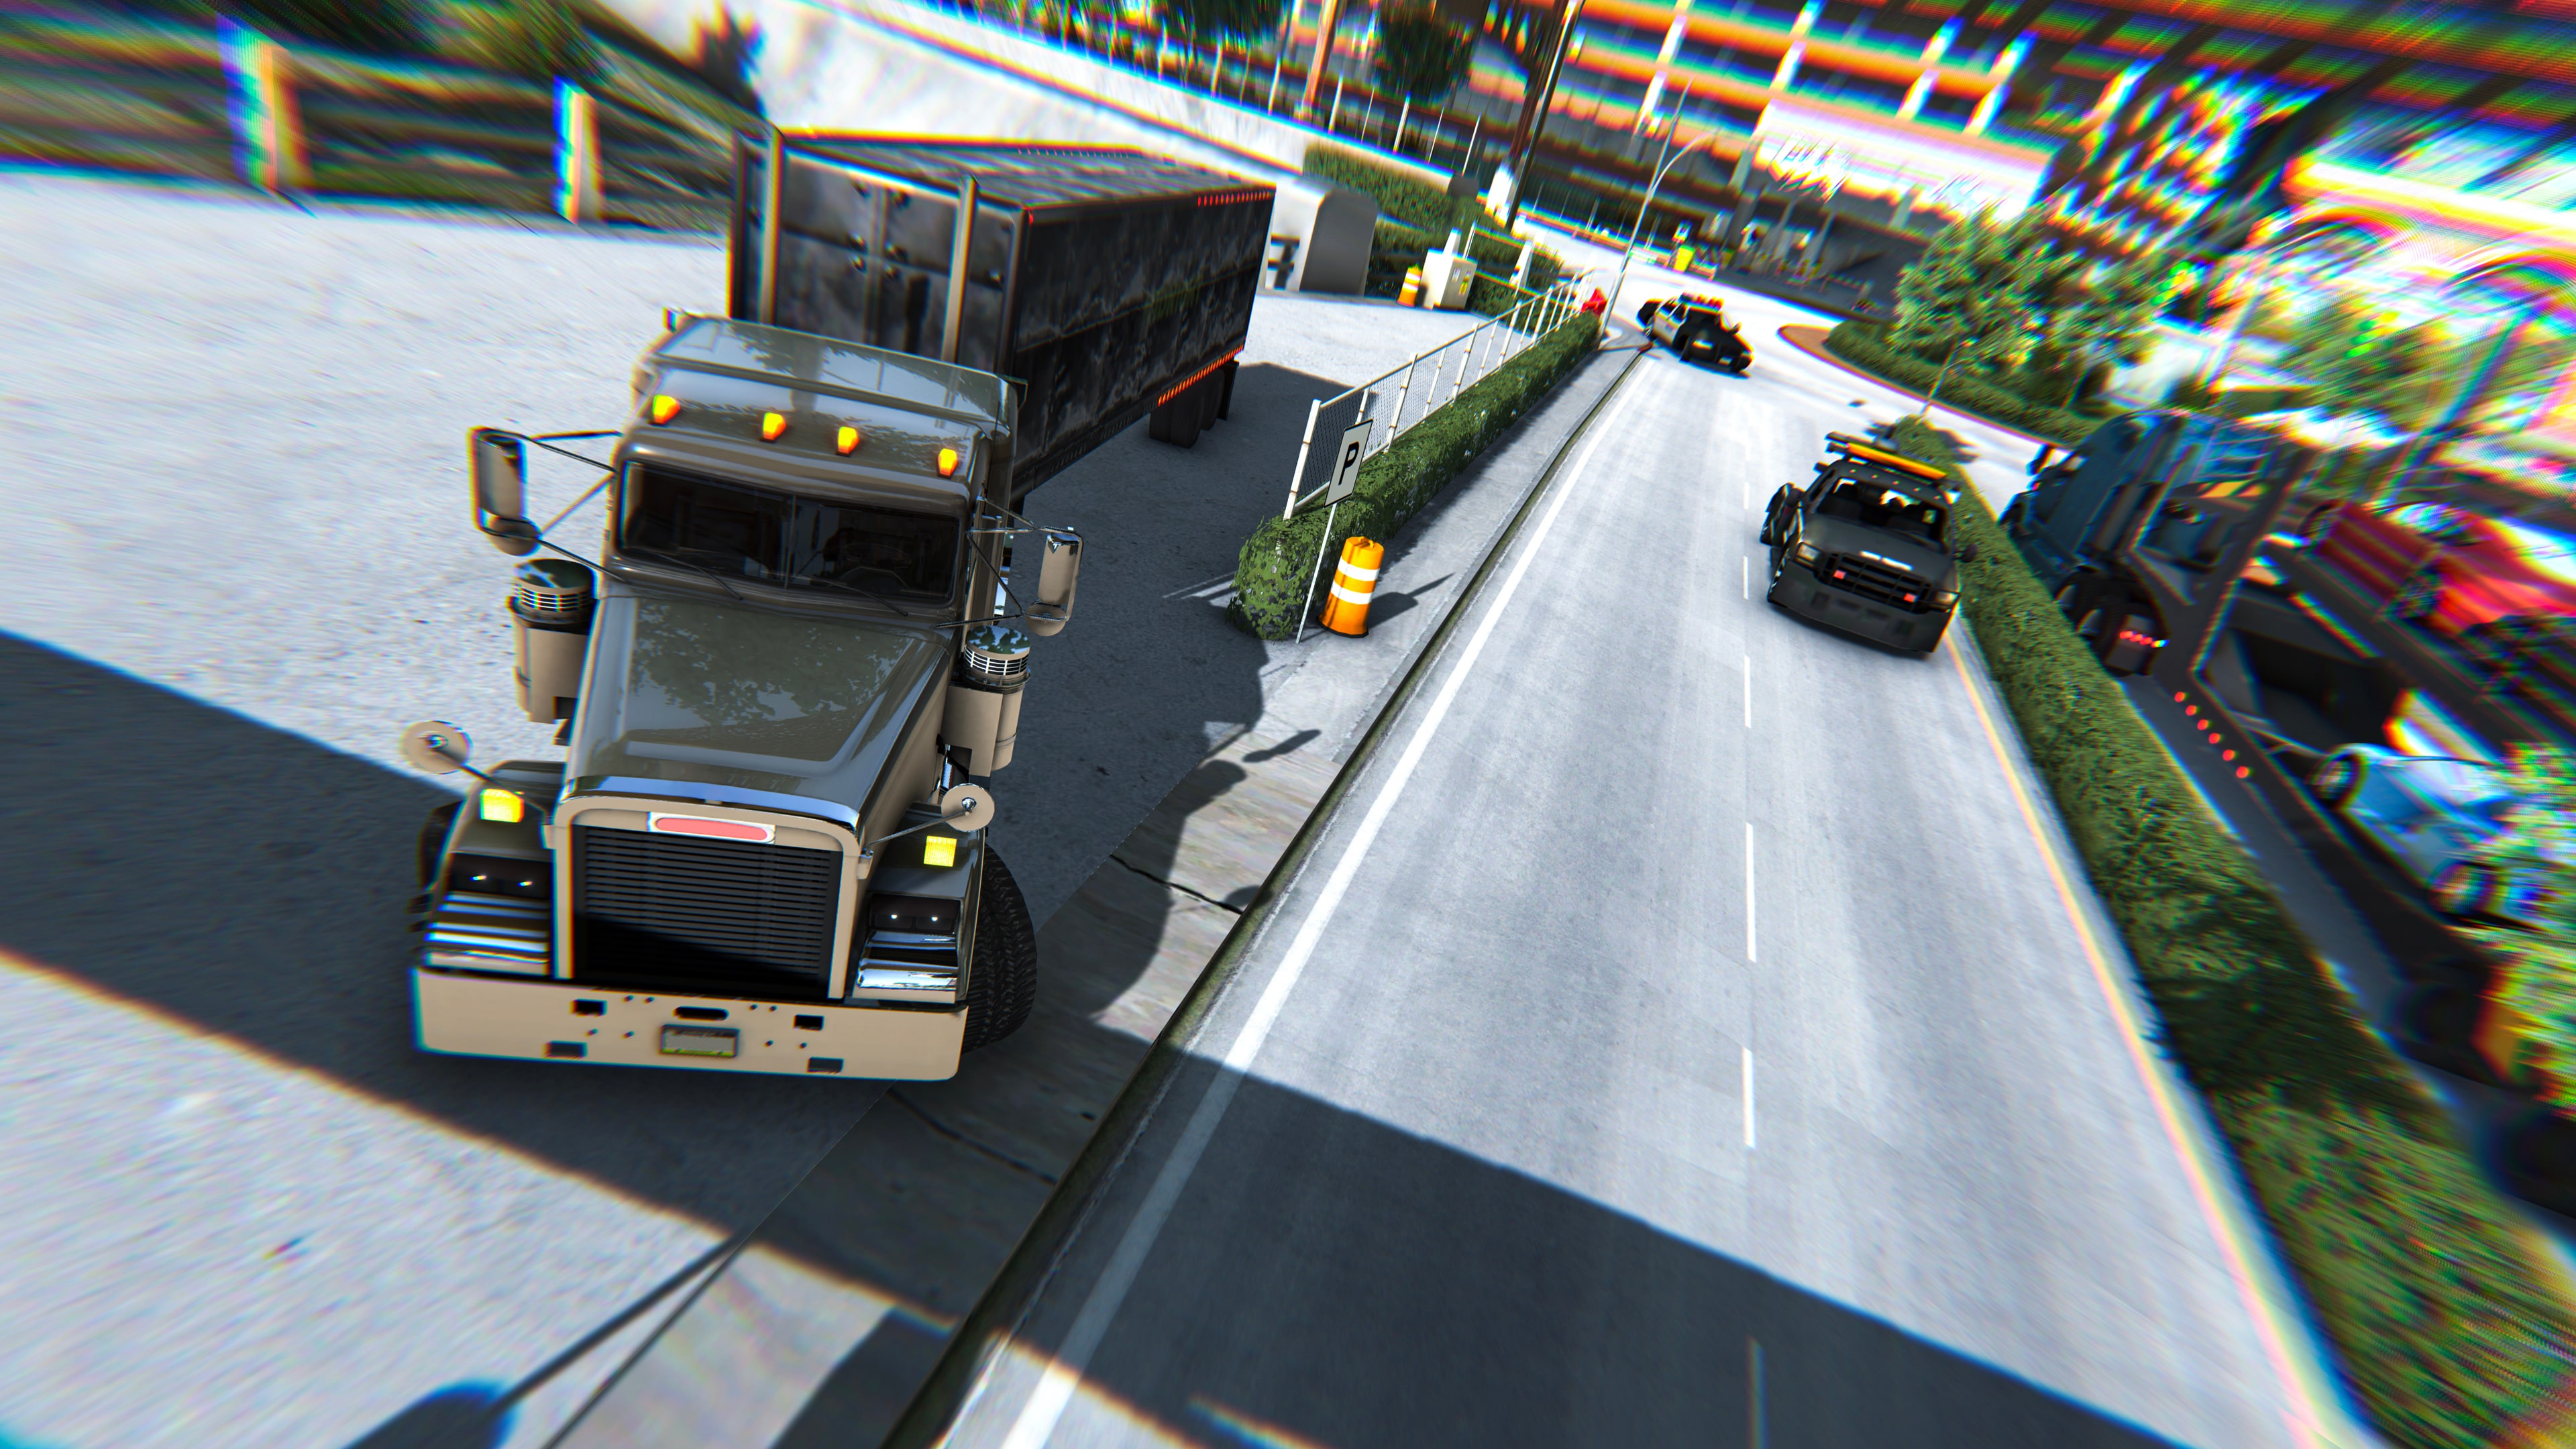 Truck Driver, simulador de caminhão, é anunciado para PC, PS4 e